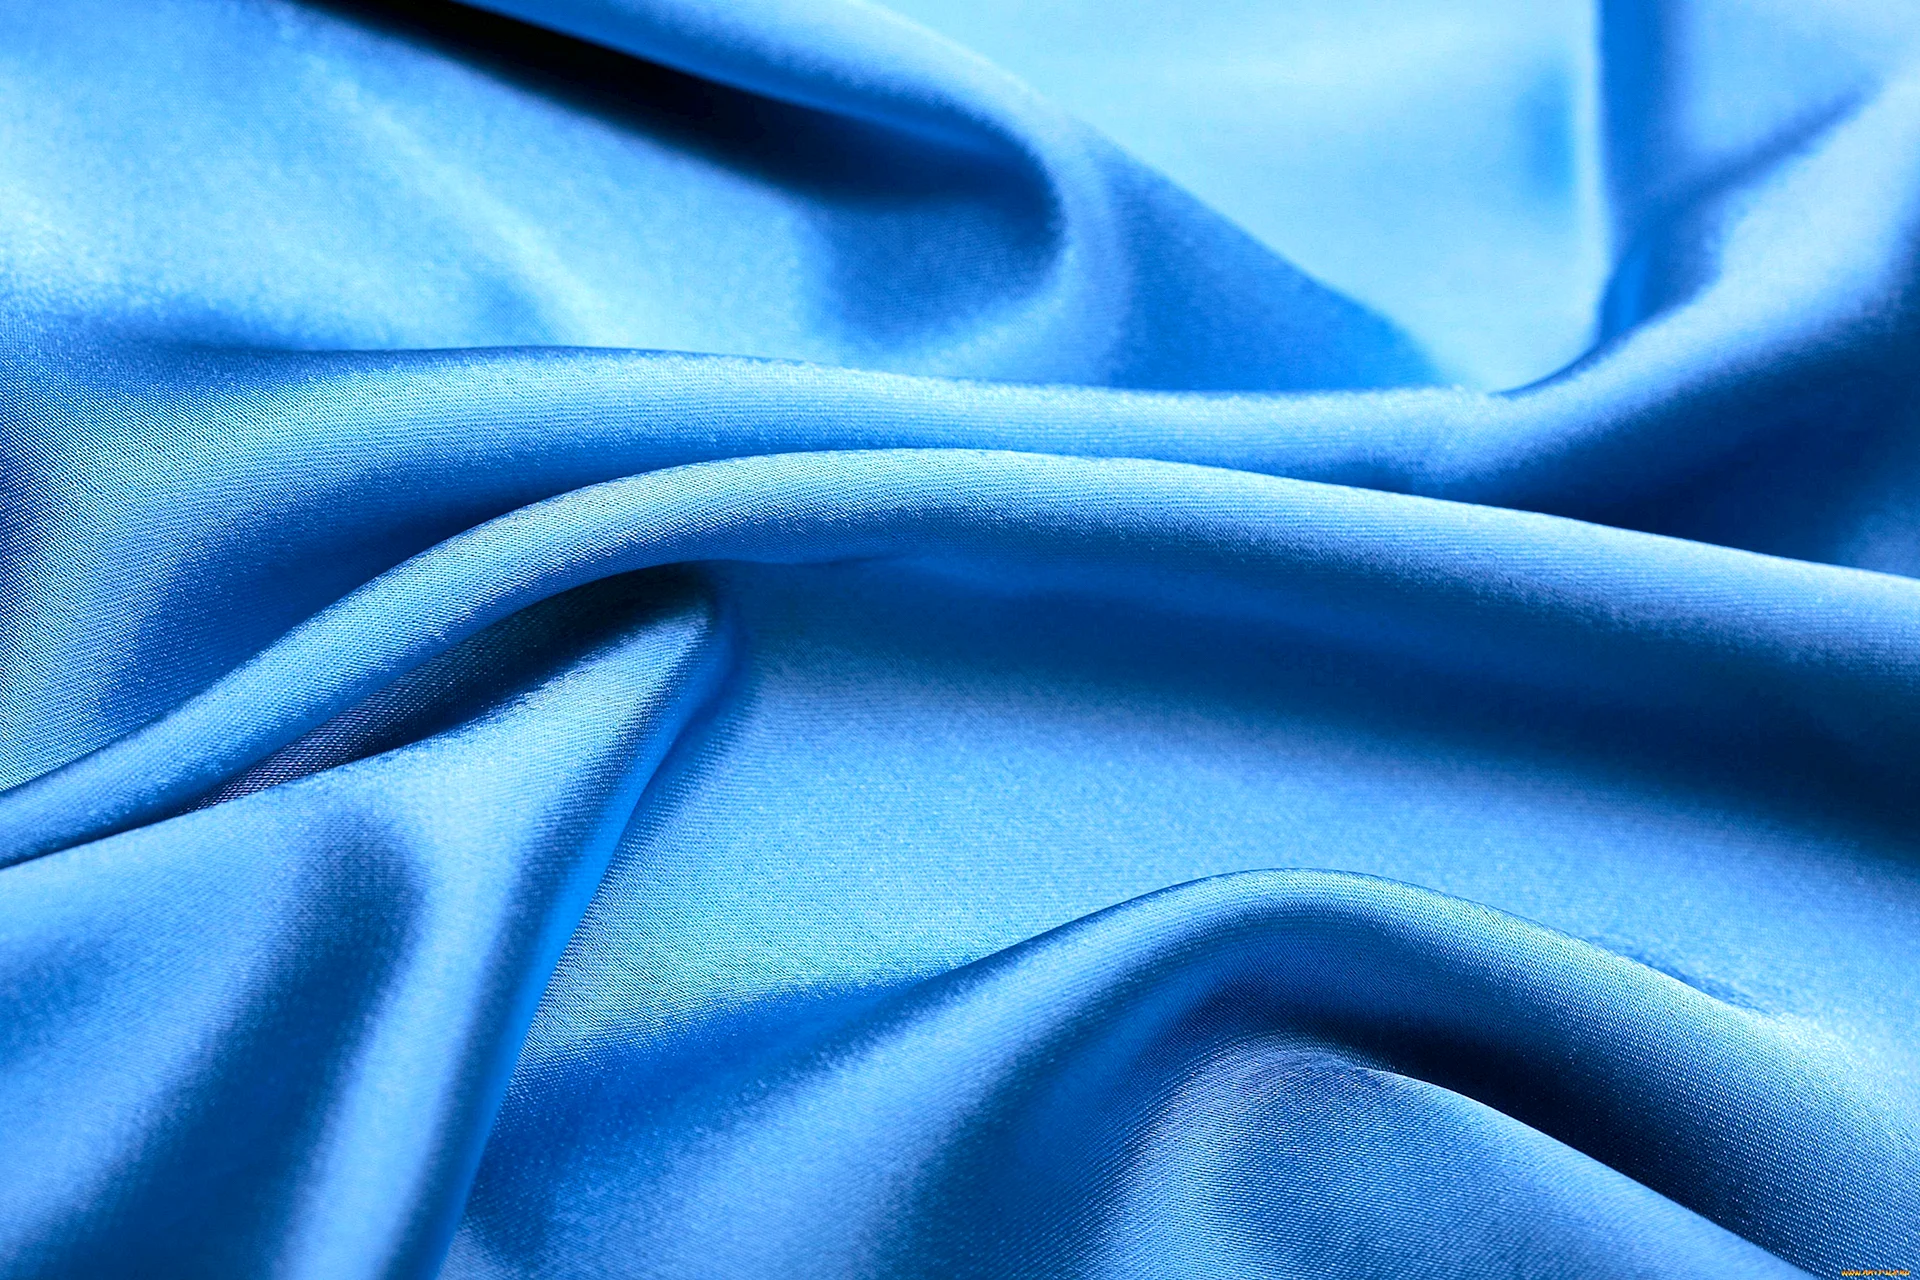 Синяя ткань